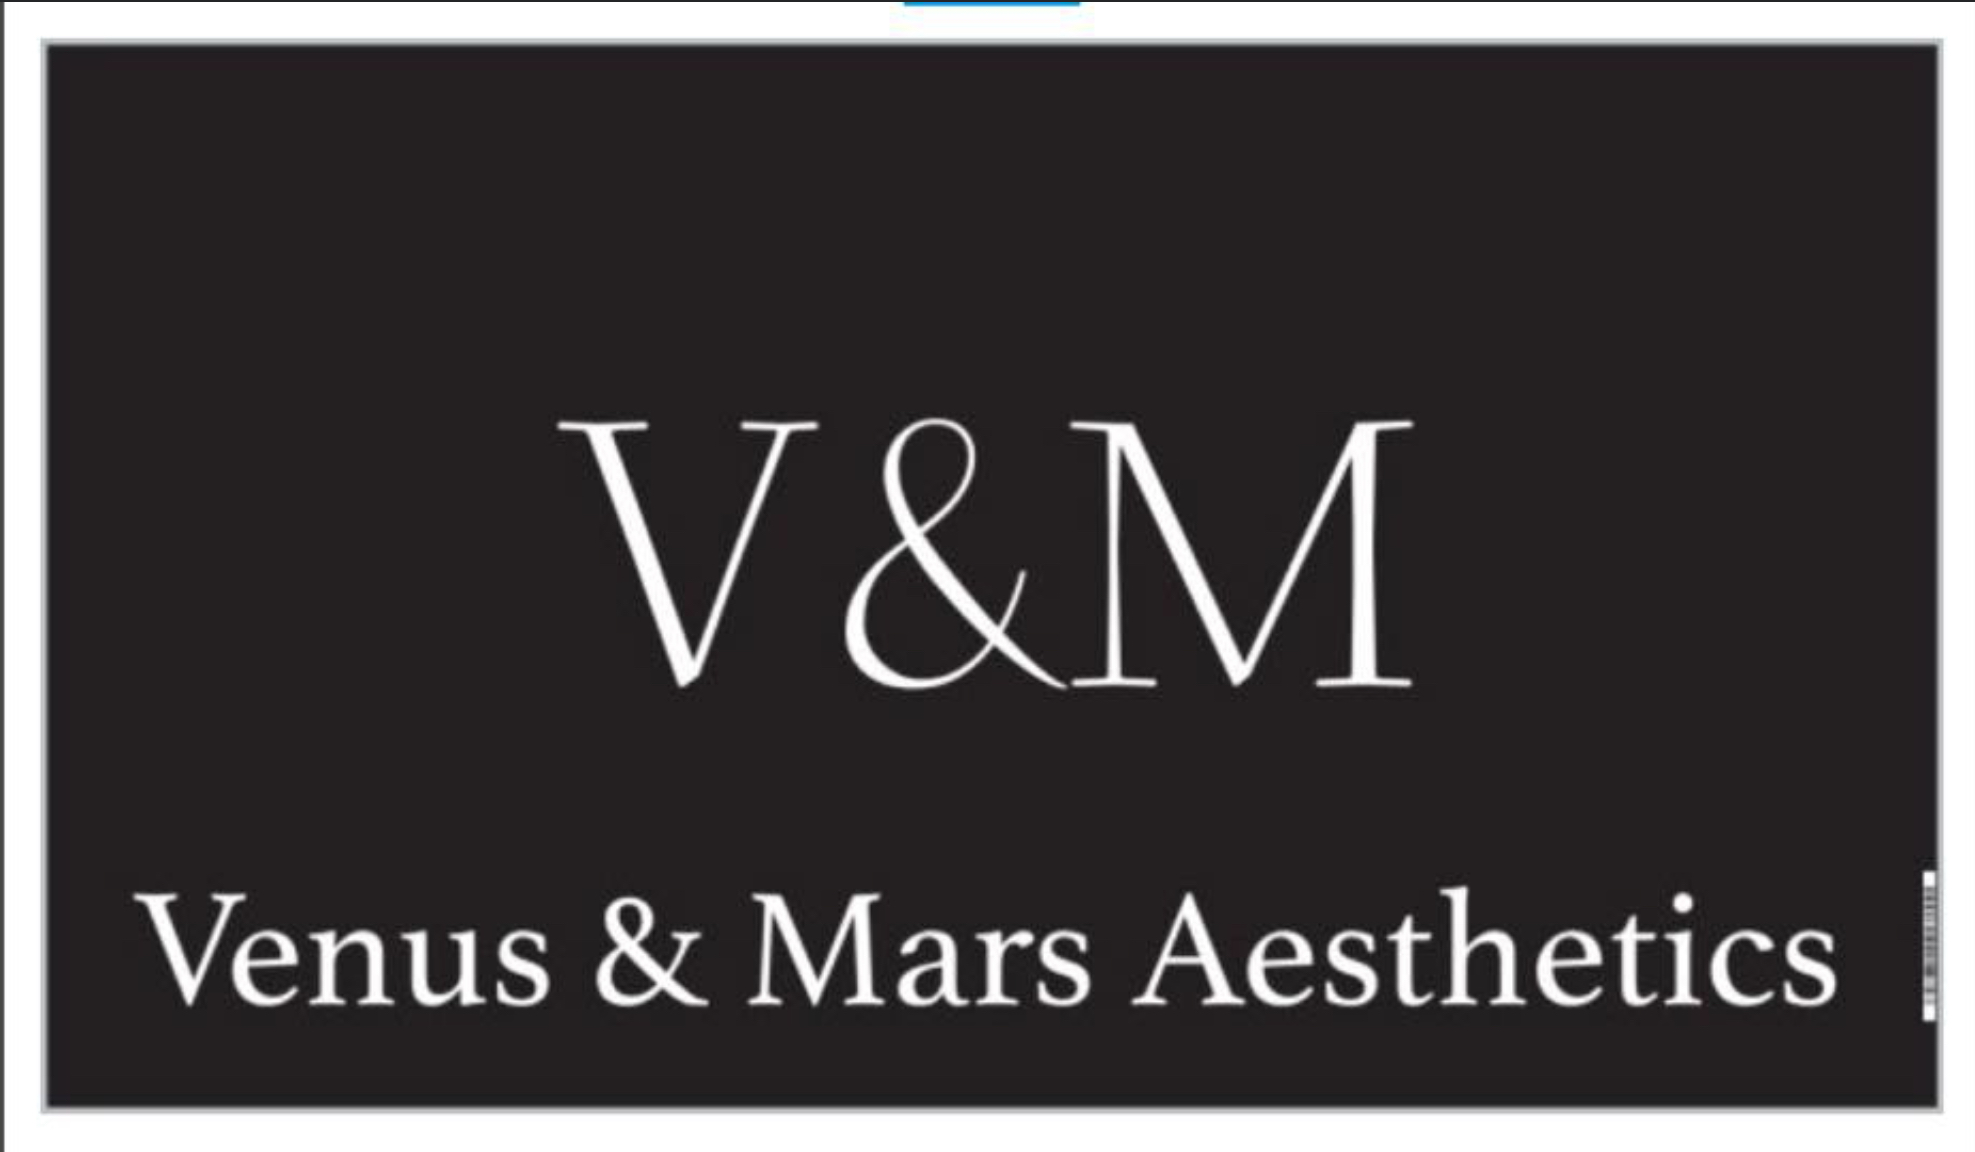 Venus & Mars Aesthetics